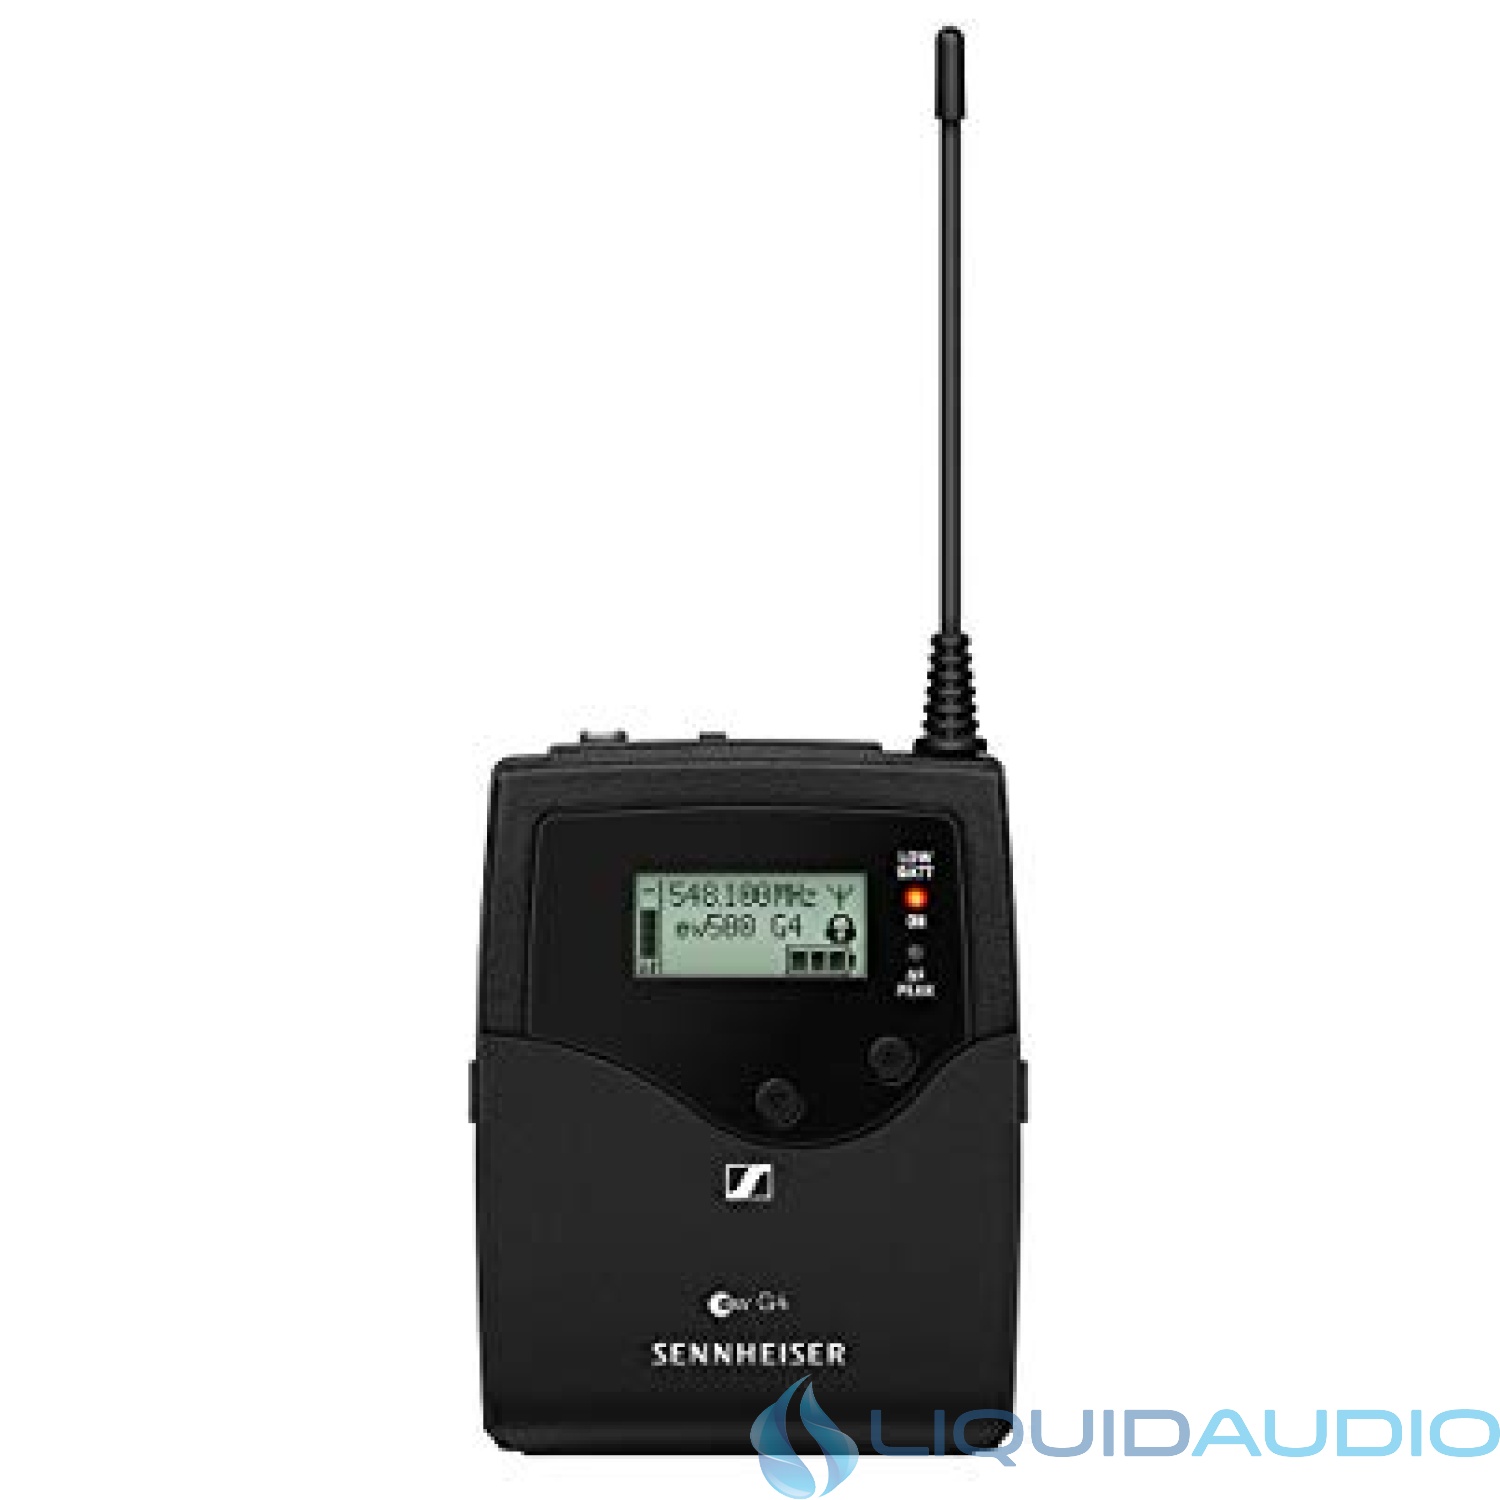 Sennheiser Pro Audio Bodypack Transmitter (509549)